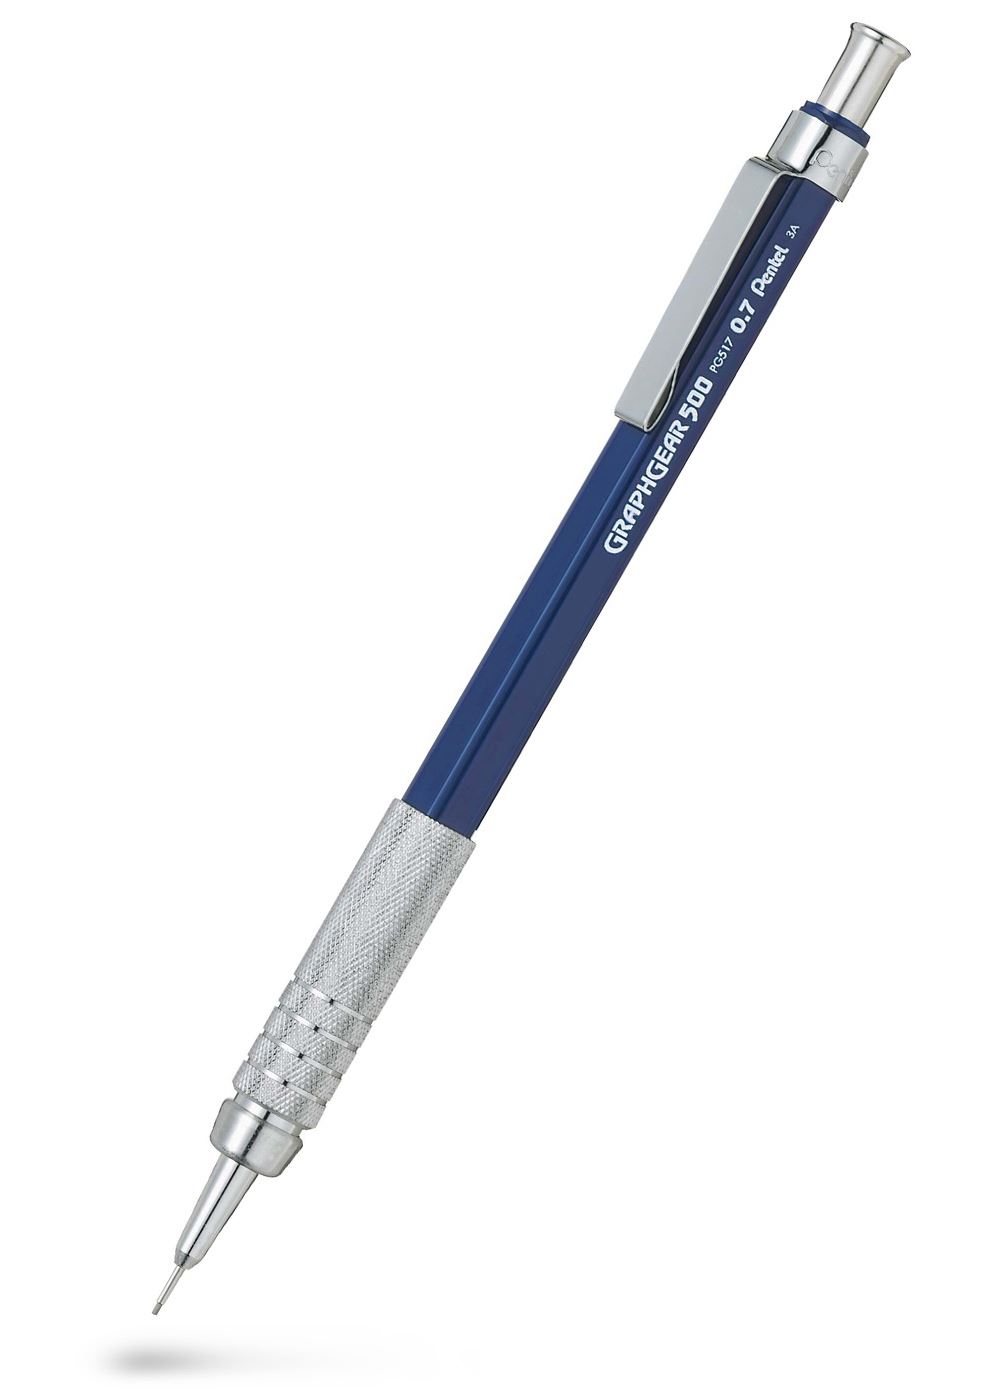 Pentel Graphgear 500 Stiftpenna 0.7 mm